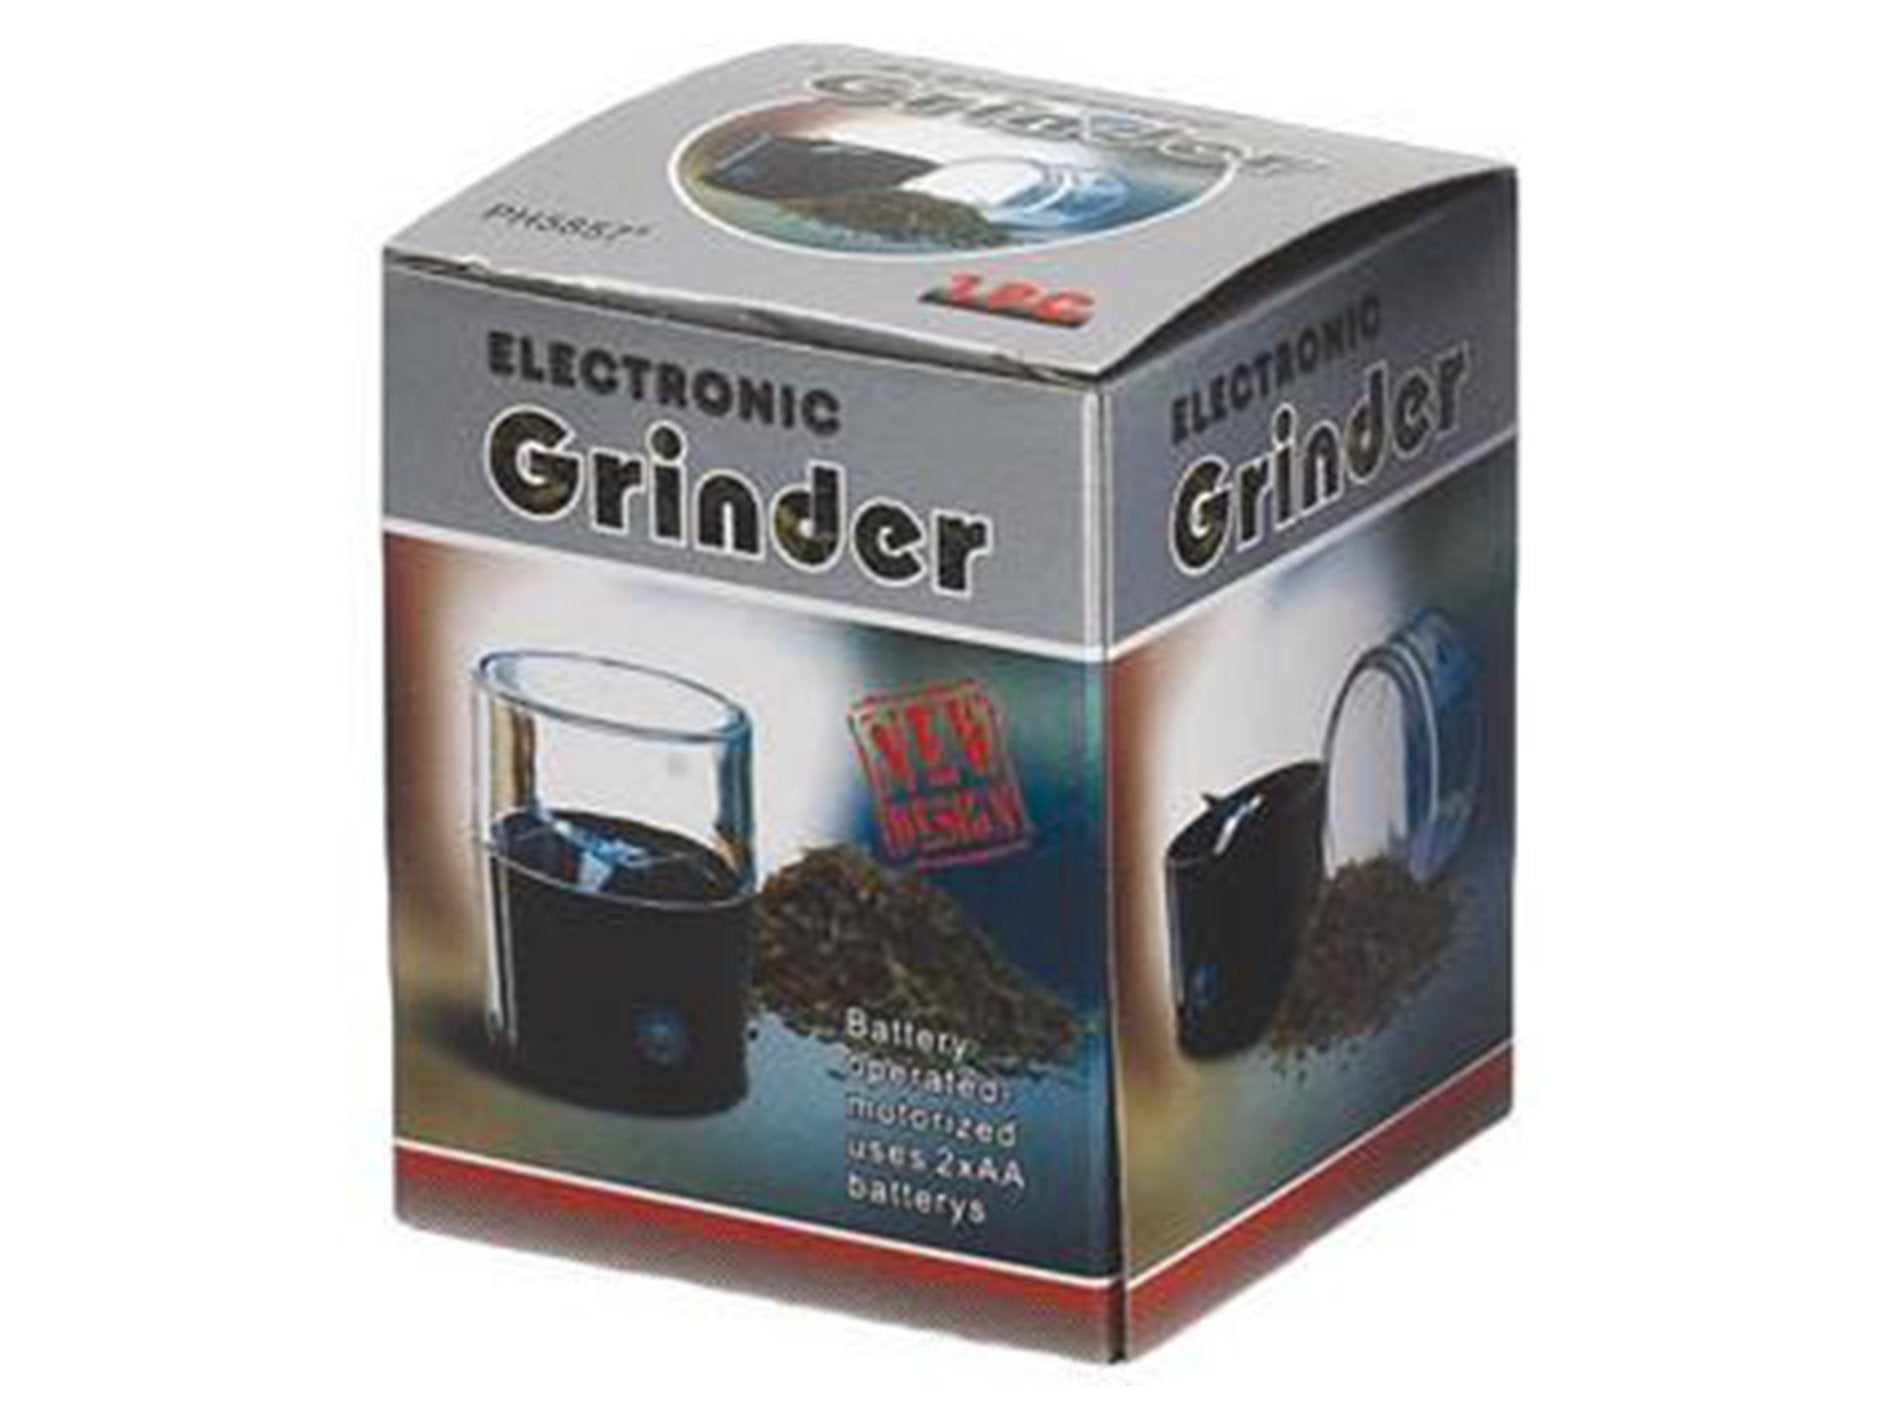 Electronic Tobacco Herb Grinder (Ph5857) - VIR Wholesale